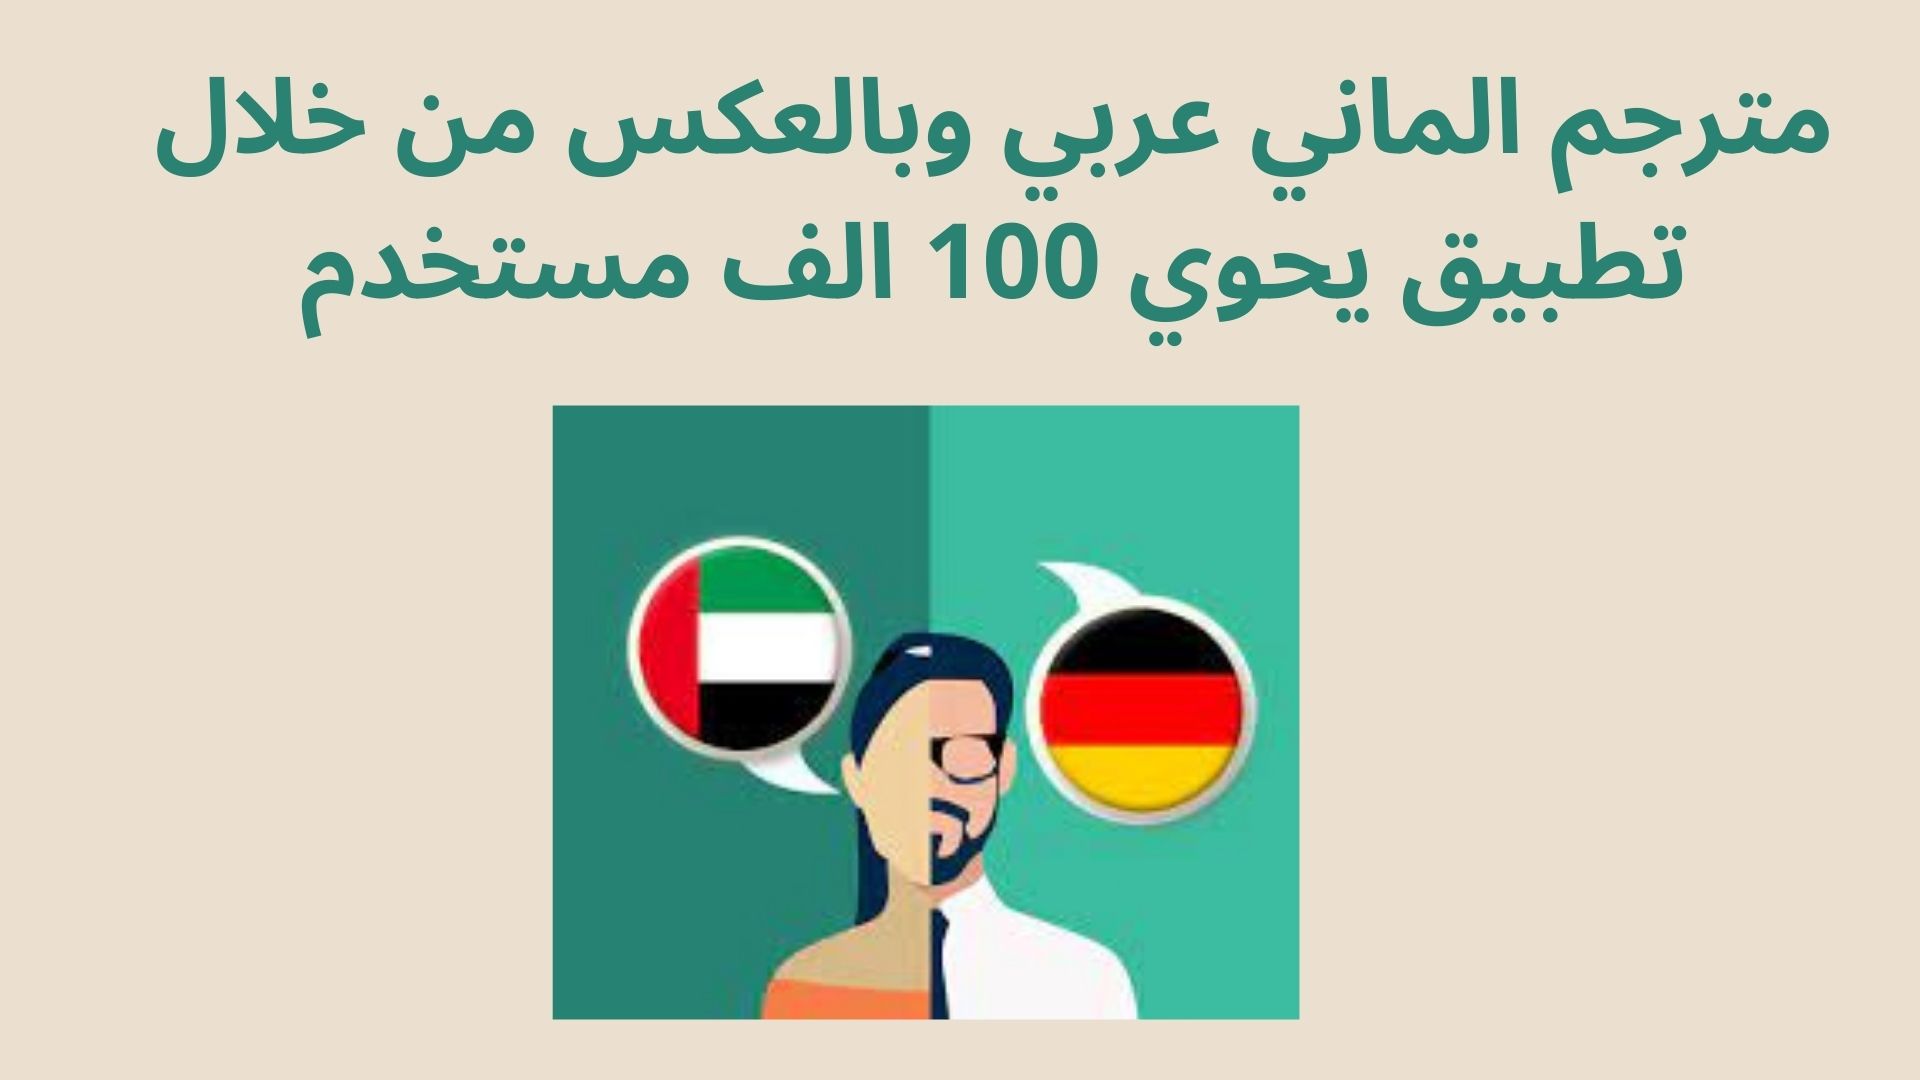 مترجم الماني عربي وبالعكس من خلال تطبيق يحوي 100 الف مستخدم